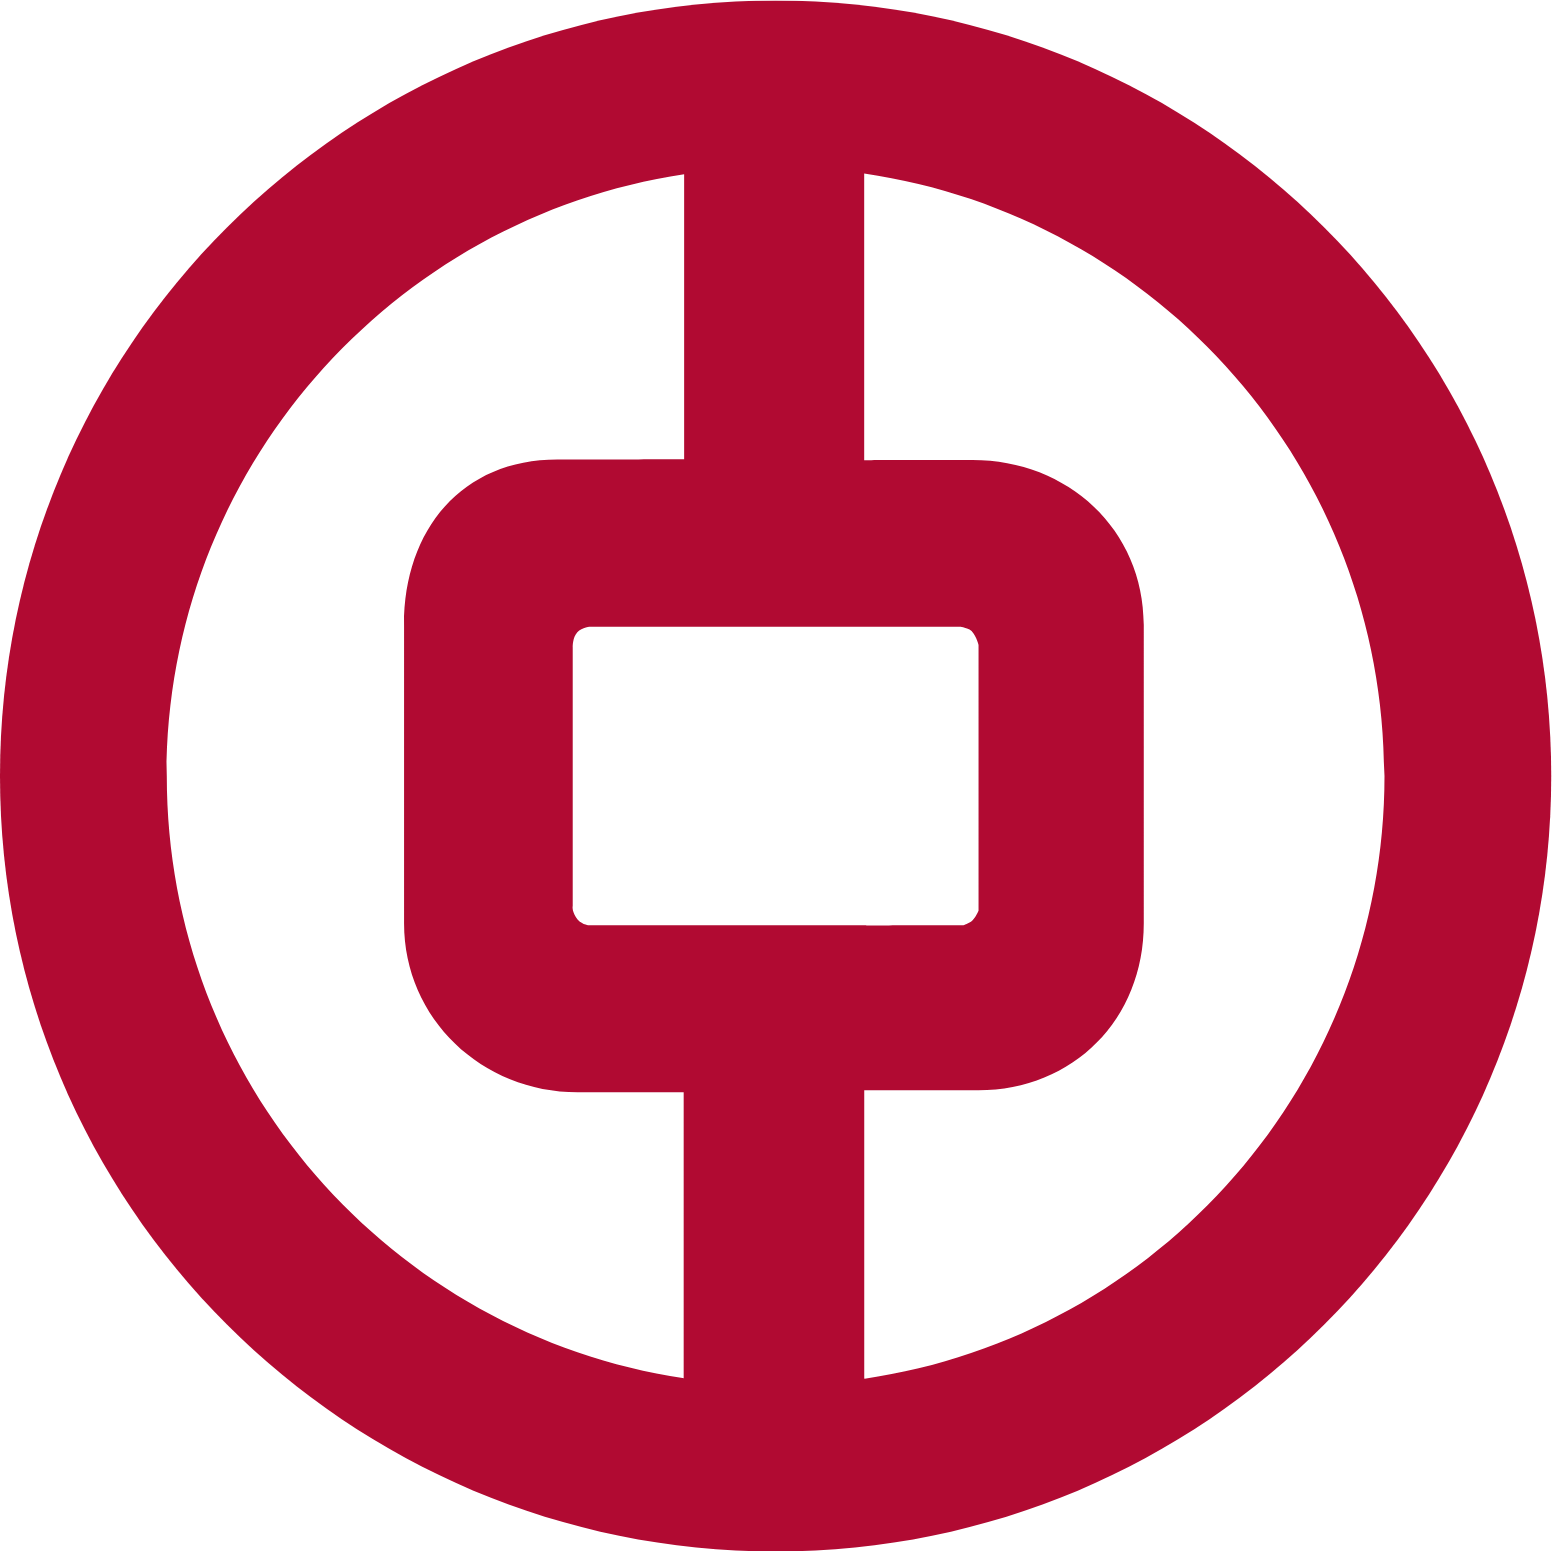 Bank of China logo (PNG transparent)